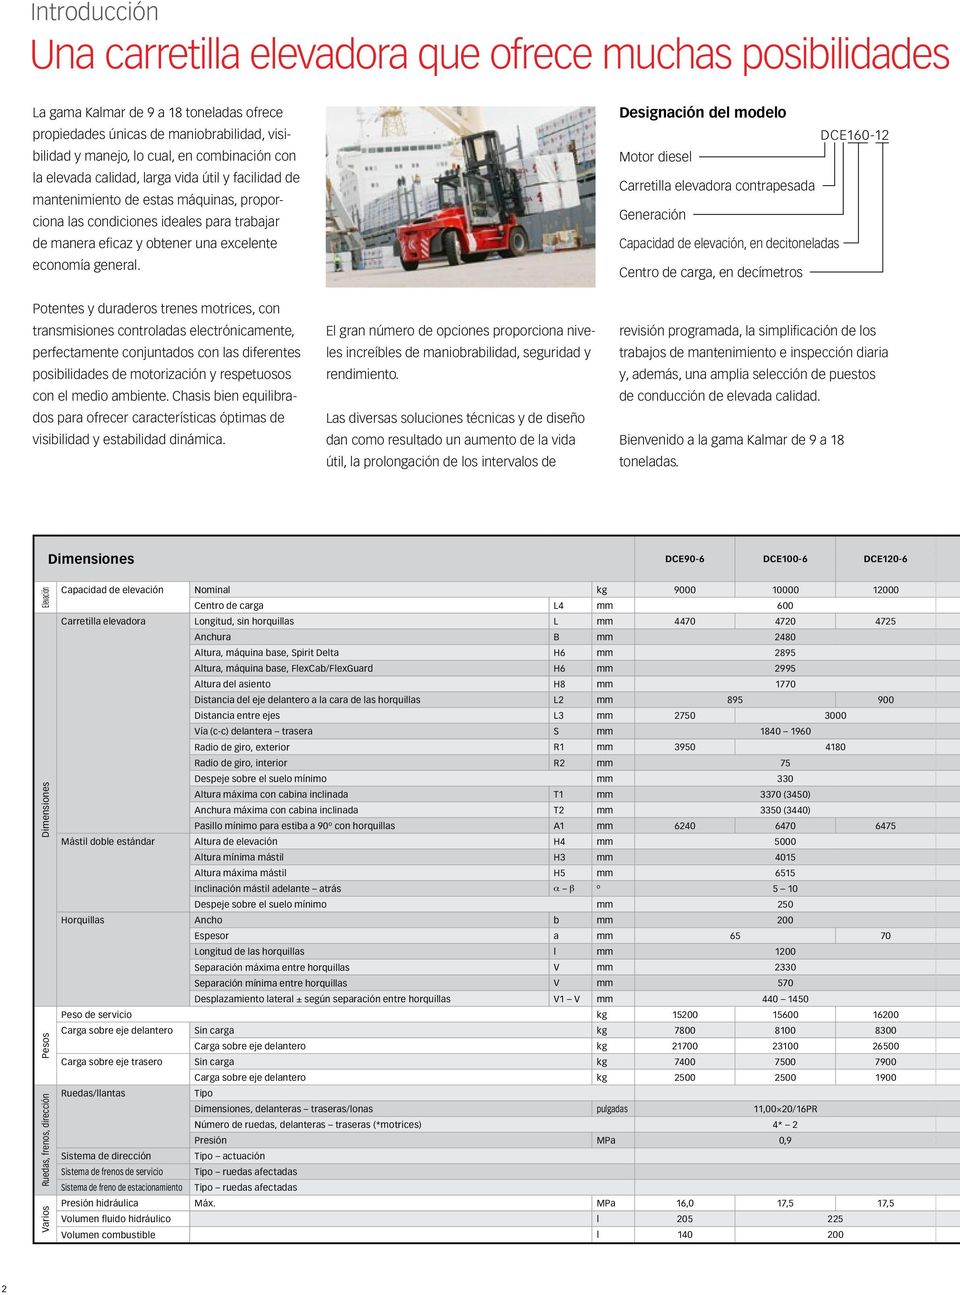 Designación del modelo DCE160-12 Motor diesel Carretilla elevadora contrapesada Generación Capacidad de elevación, en decitoneladas Centro de carga, en decímetros Potentes y duraderos trenes